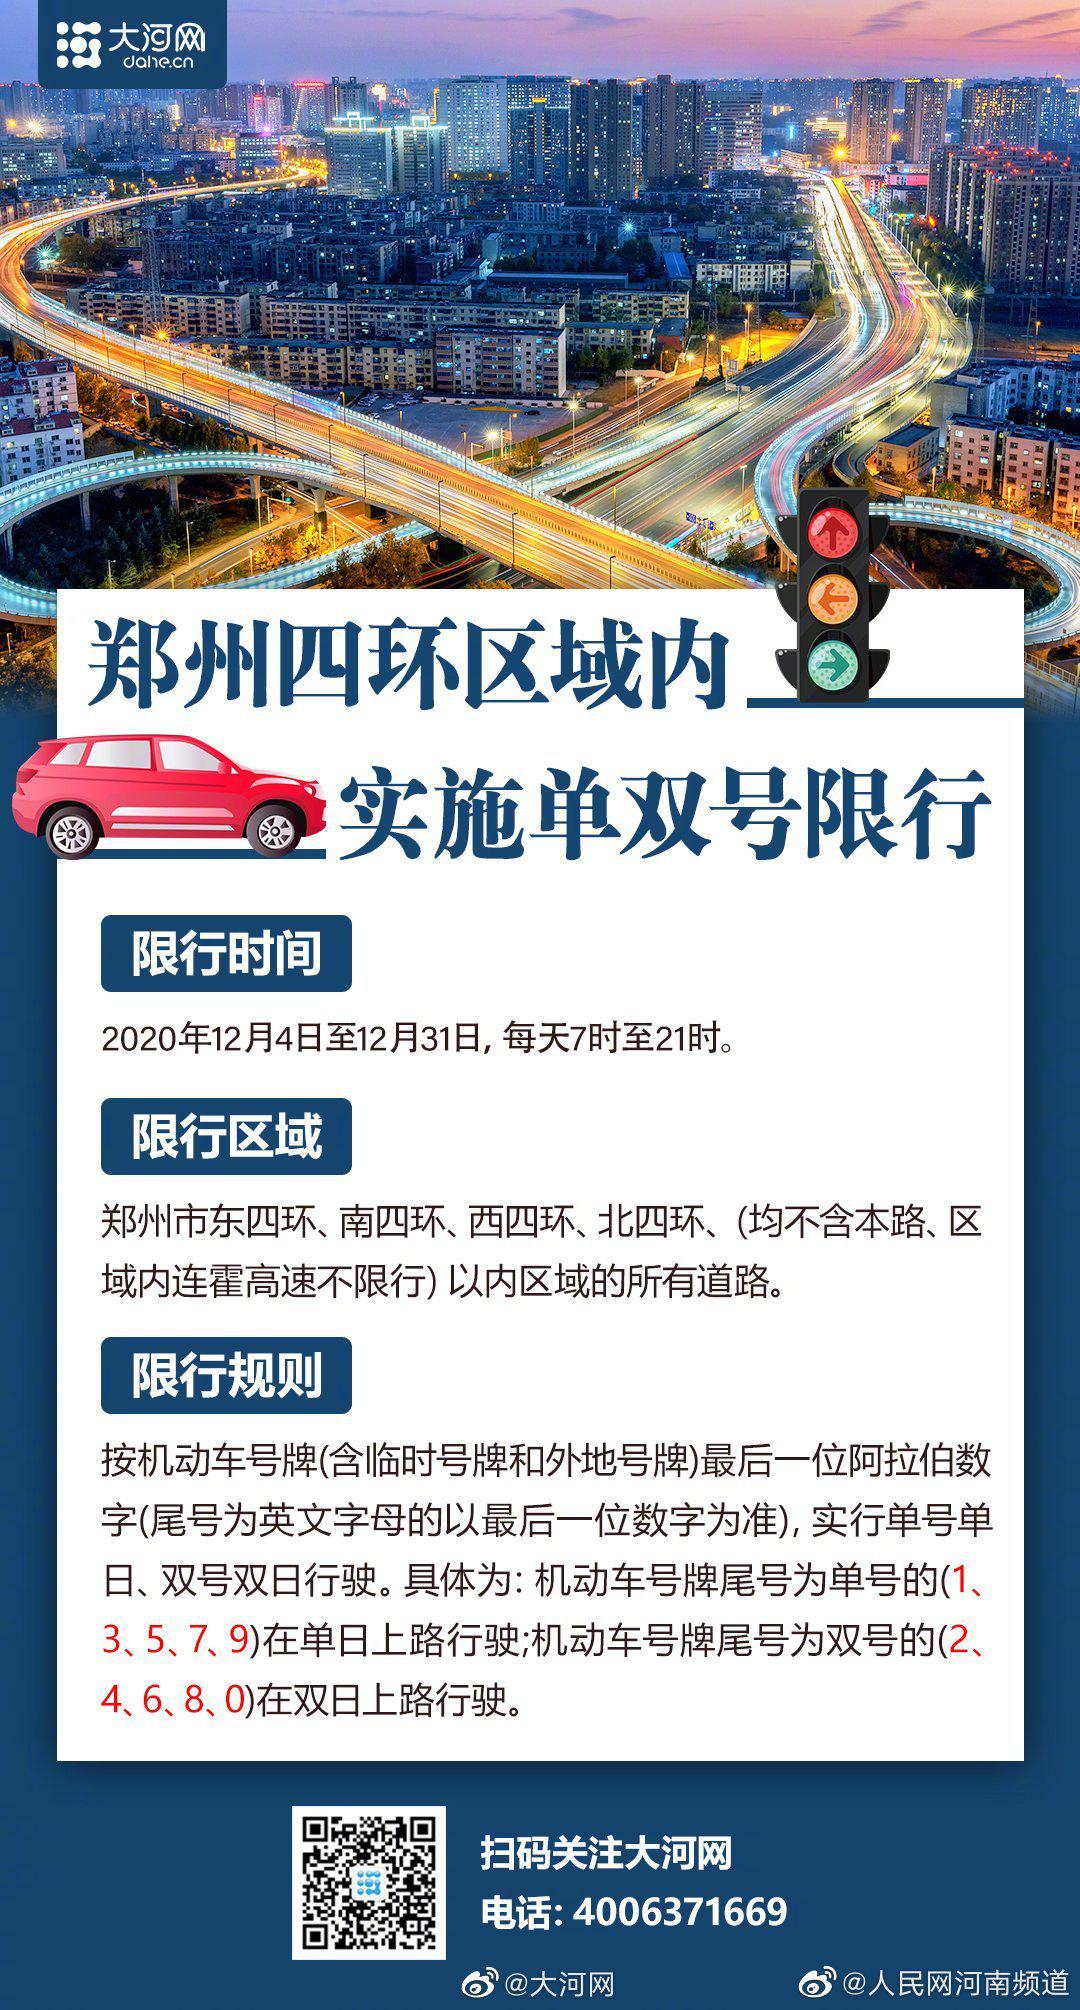 12月4日起,郑州四环区域内将实施单双号限行 限行至12月31日